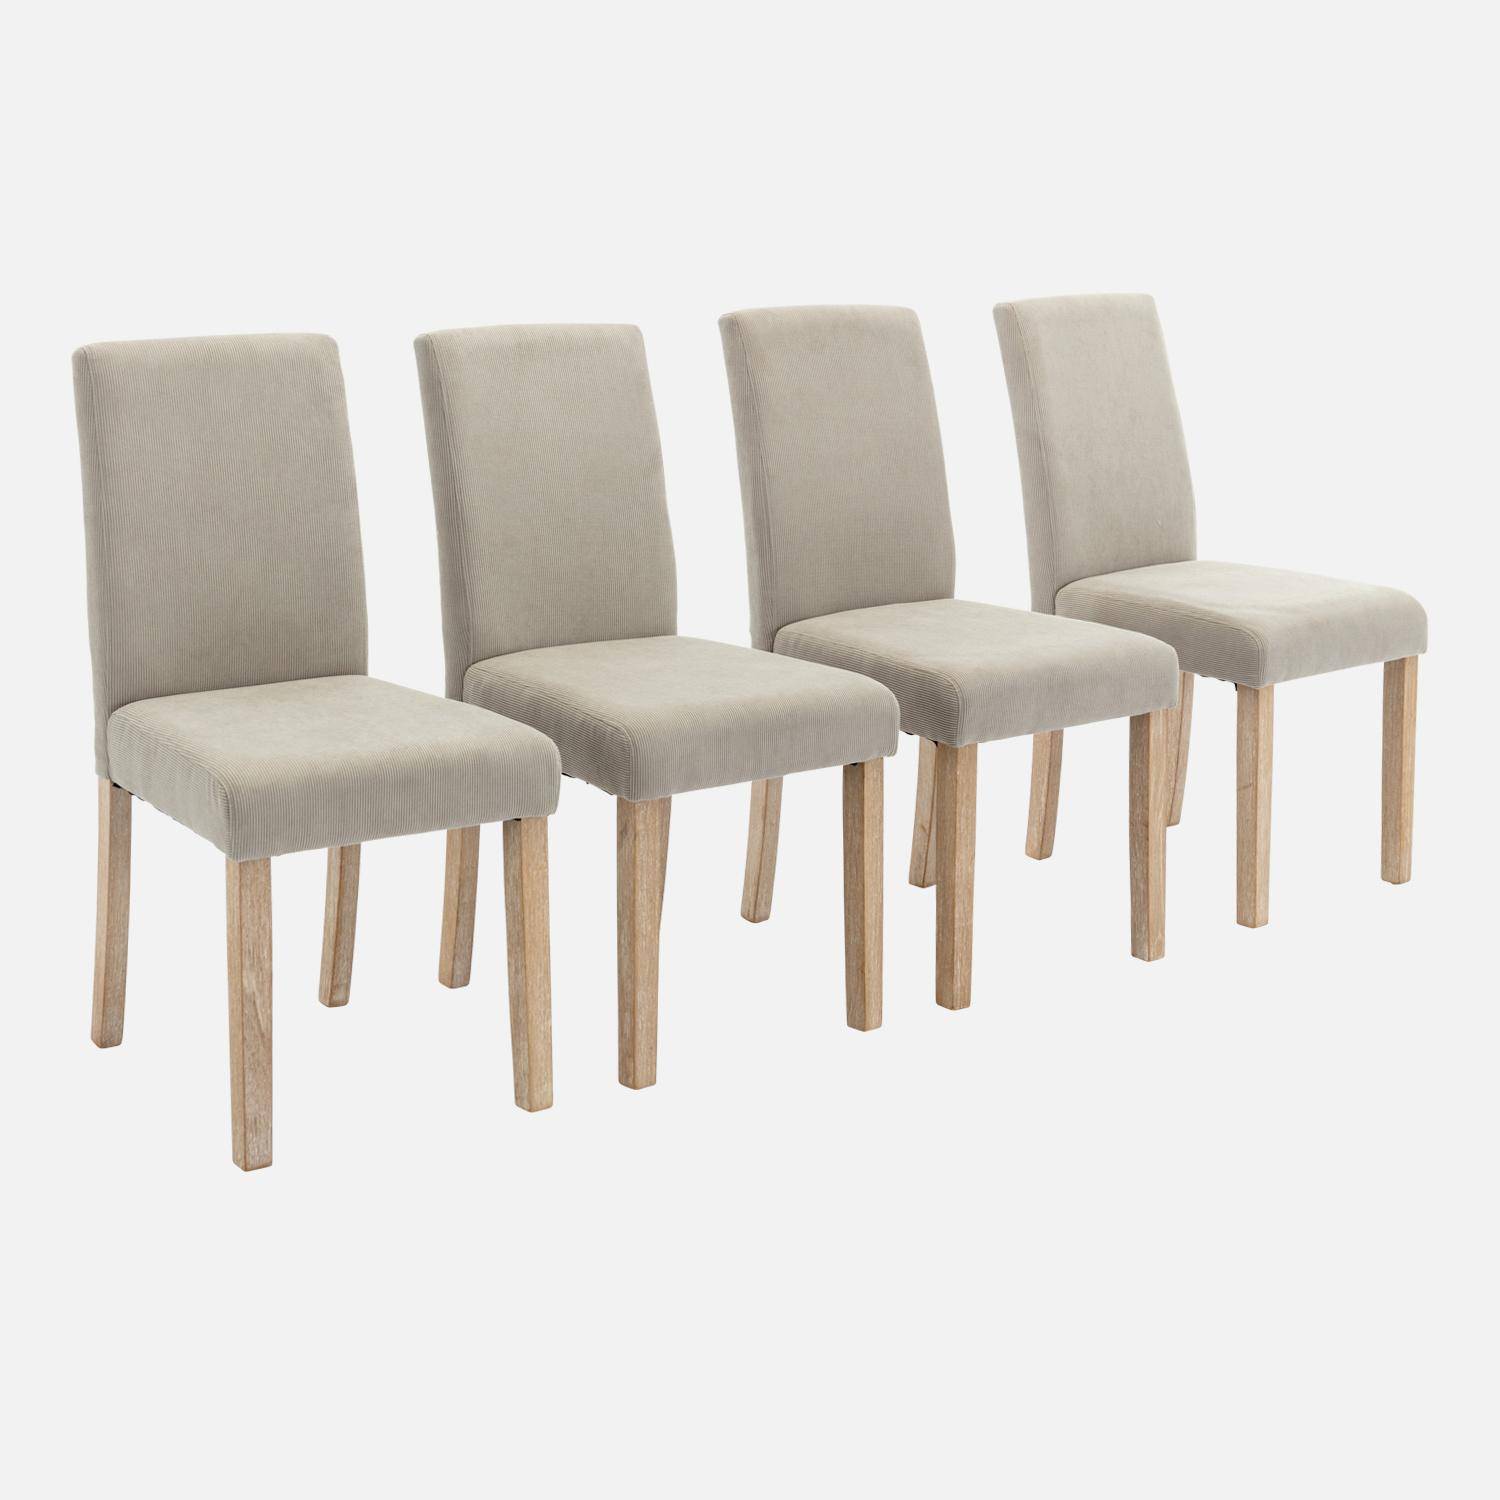 Set van 4 grijze corduroy stoelen, Rita, met witte poten van heveahout,sweeek,Photo3